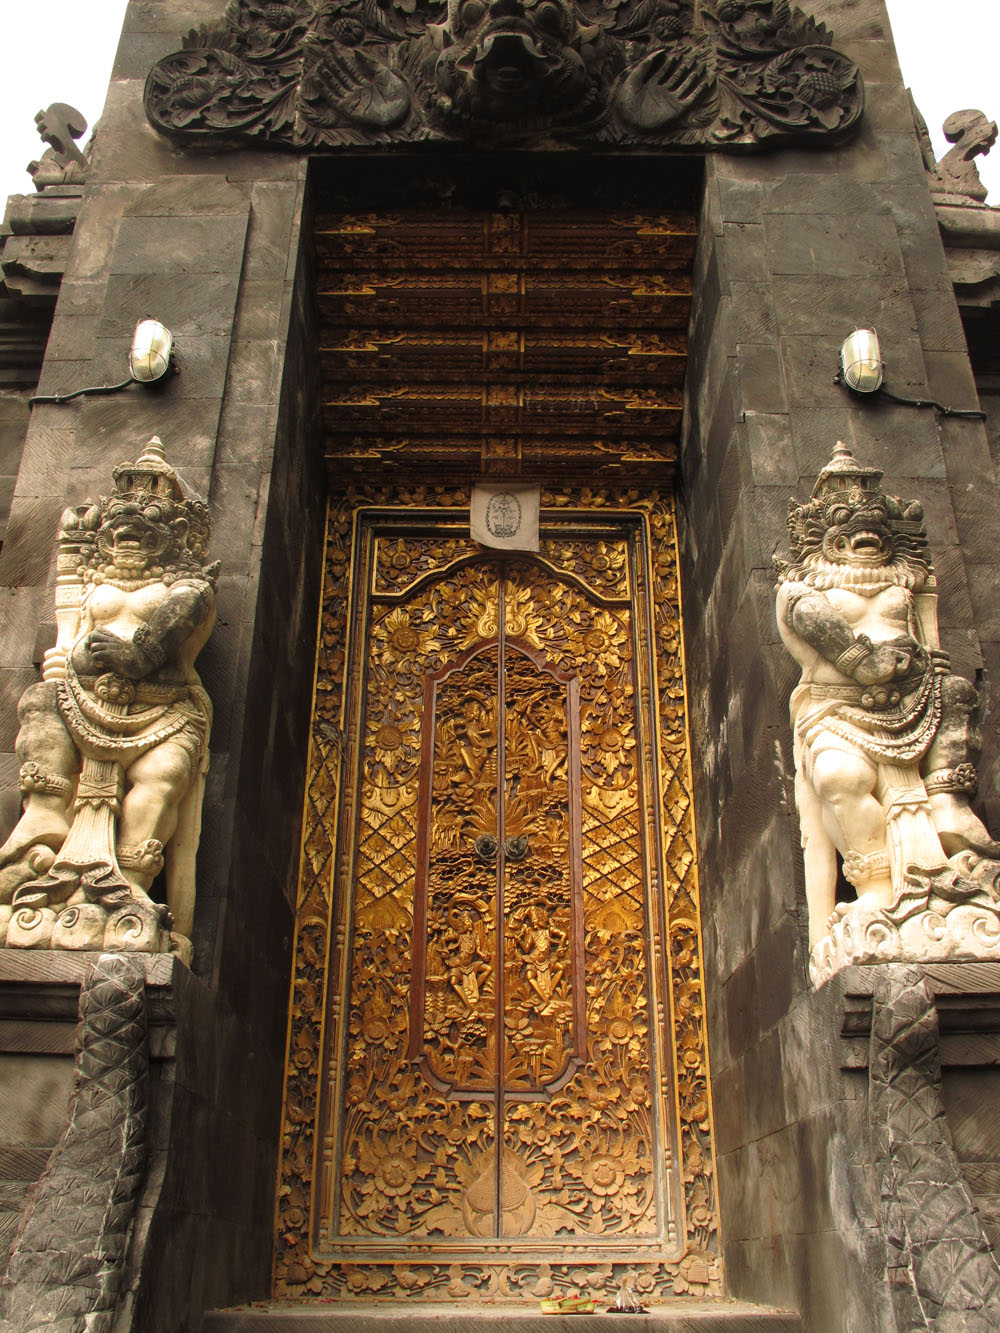 Balinese temple doorway, Nusa Lembongan, Bali